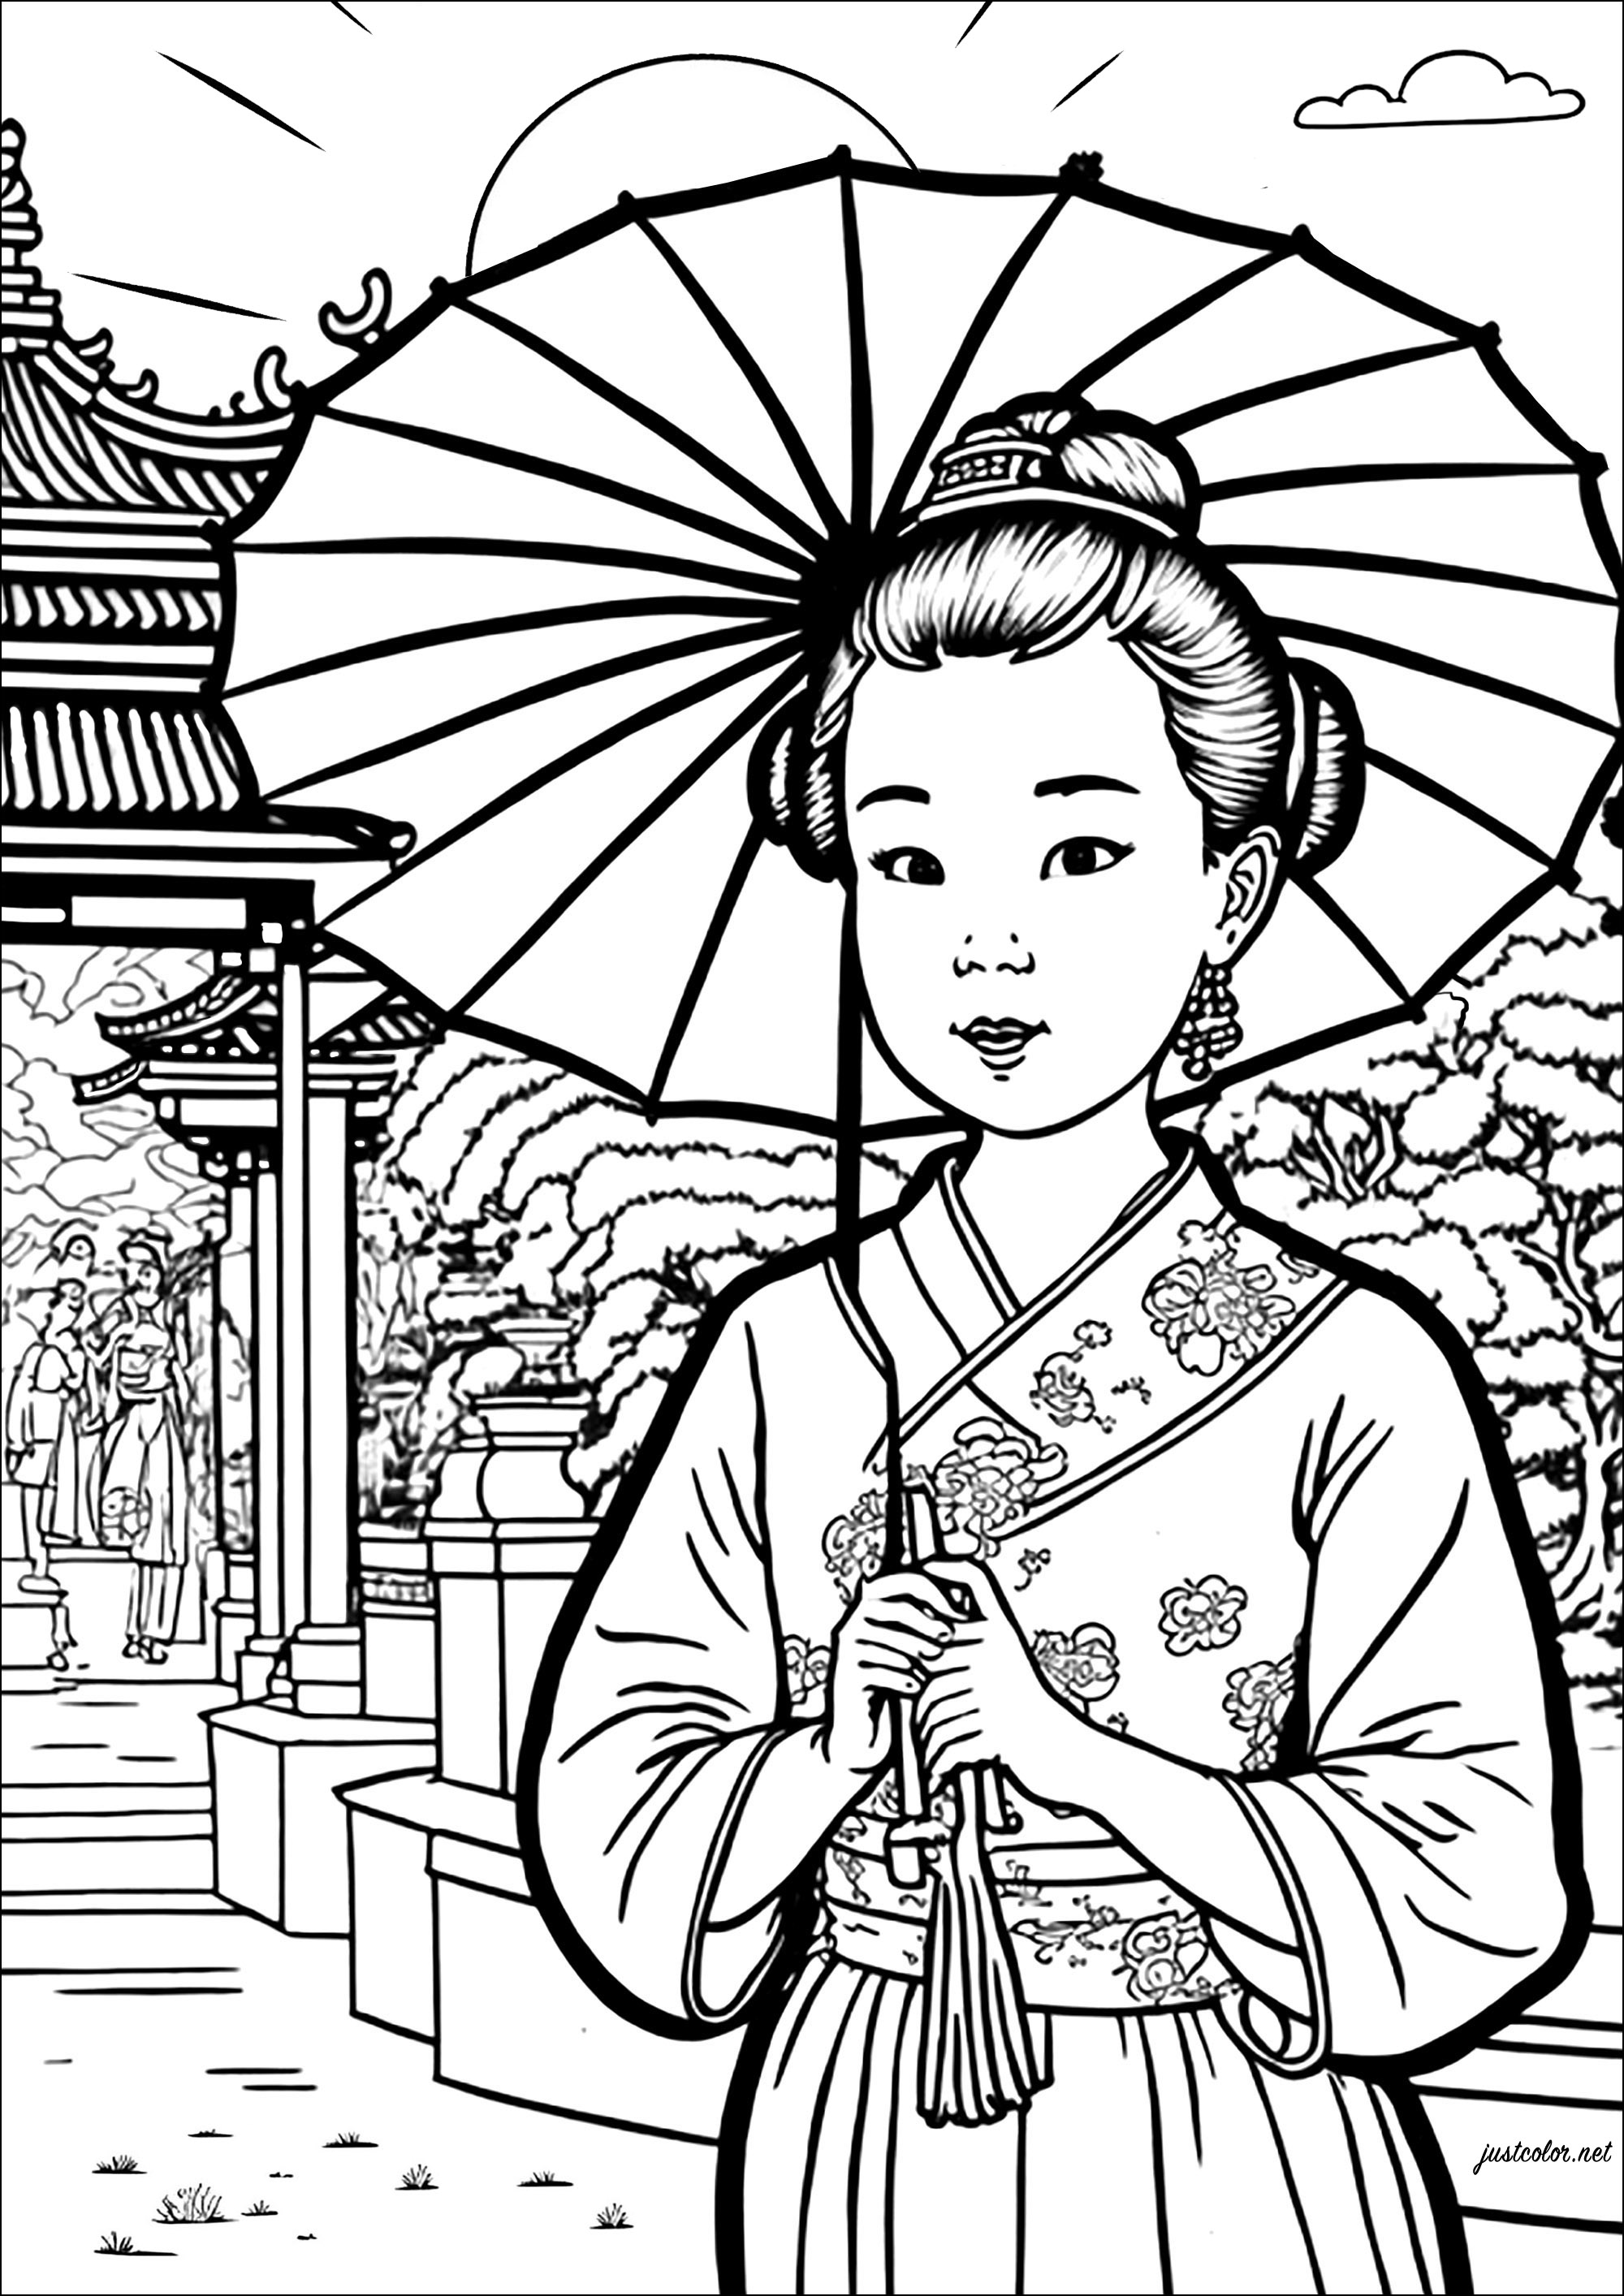 Página para colorear de una joven china con un paraguas. Colorea también el bonito templo y el jardín del fondo de este hermoso dibujo.